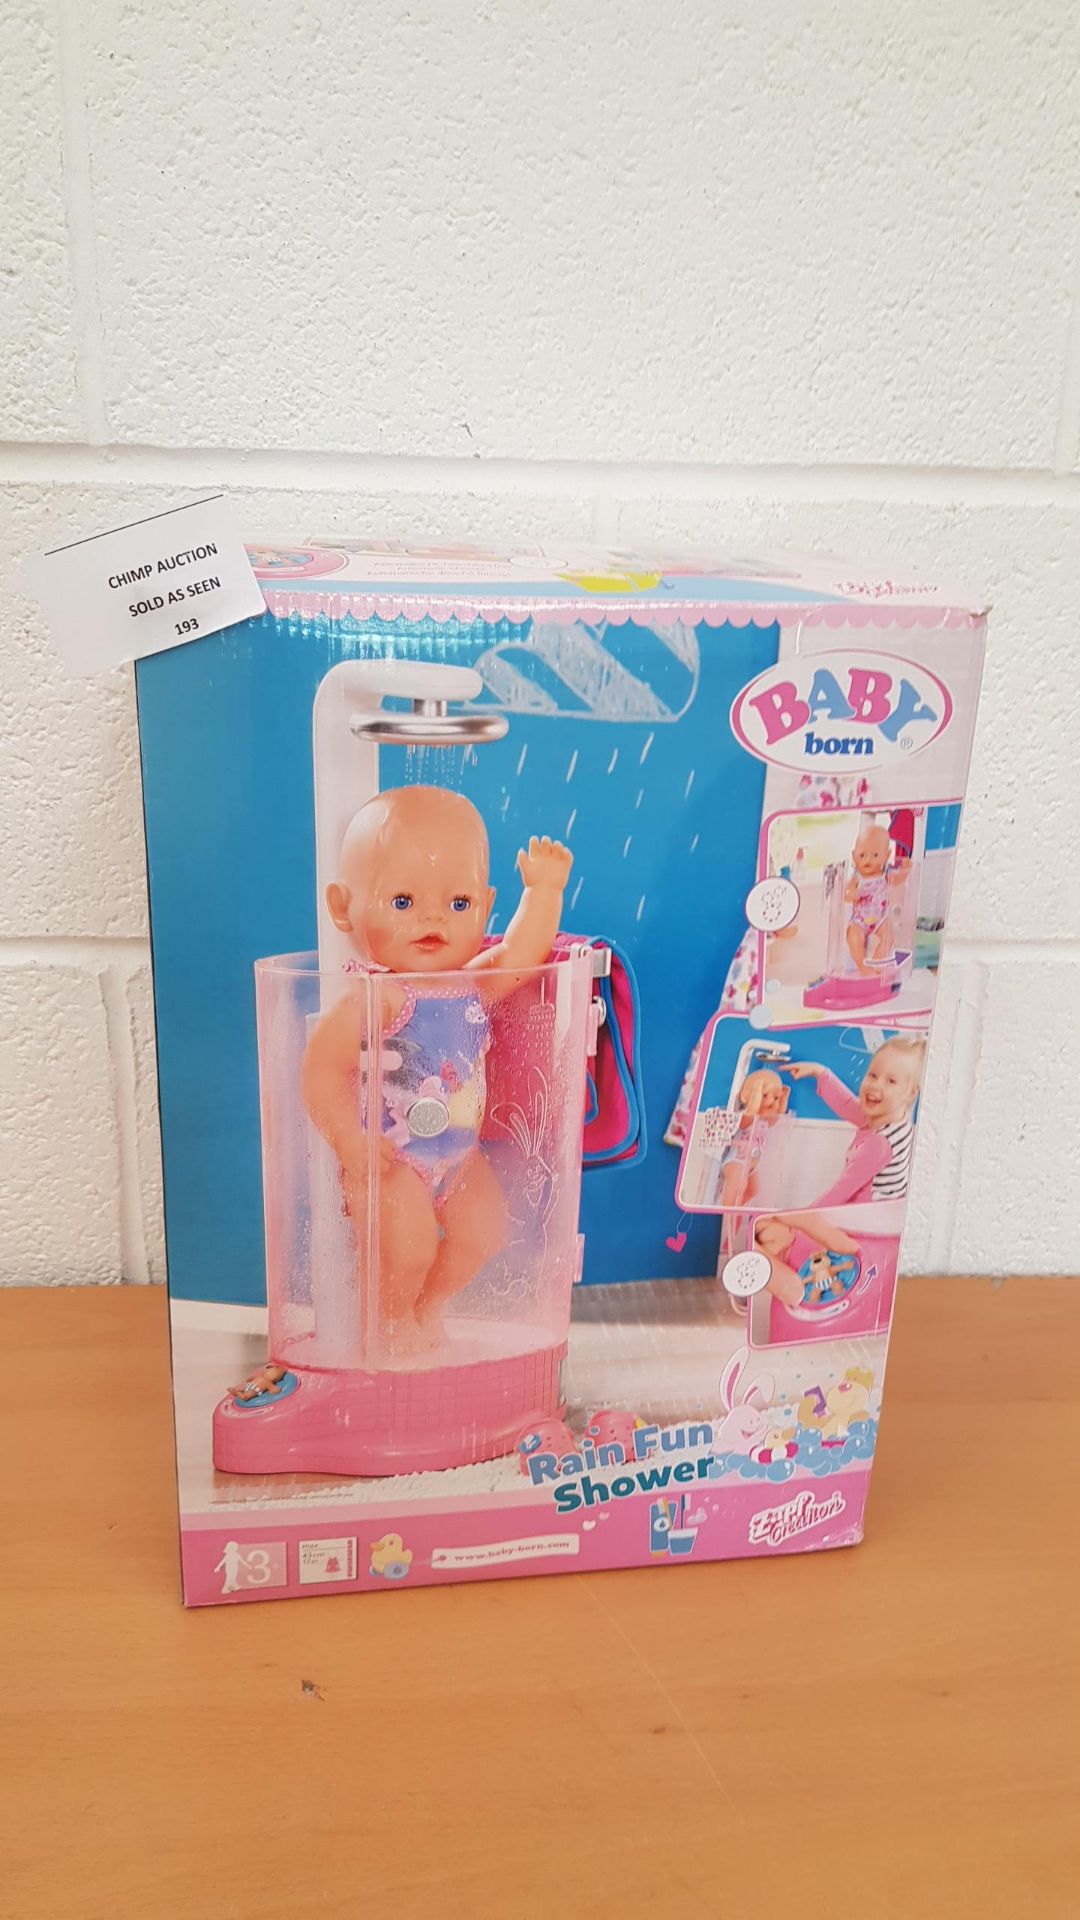 Baby Born Rain Fun Shower set